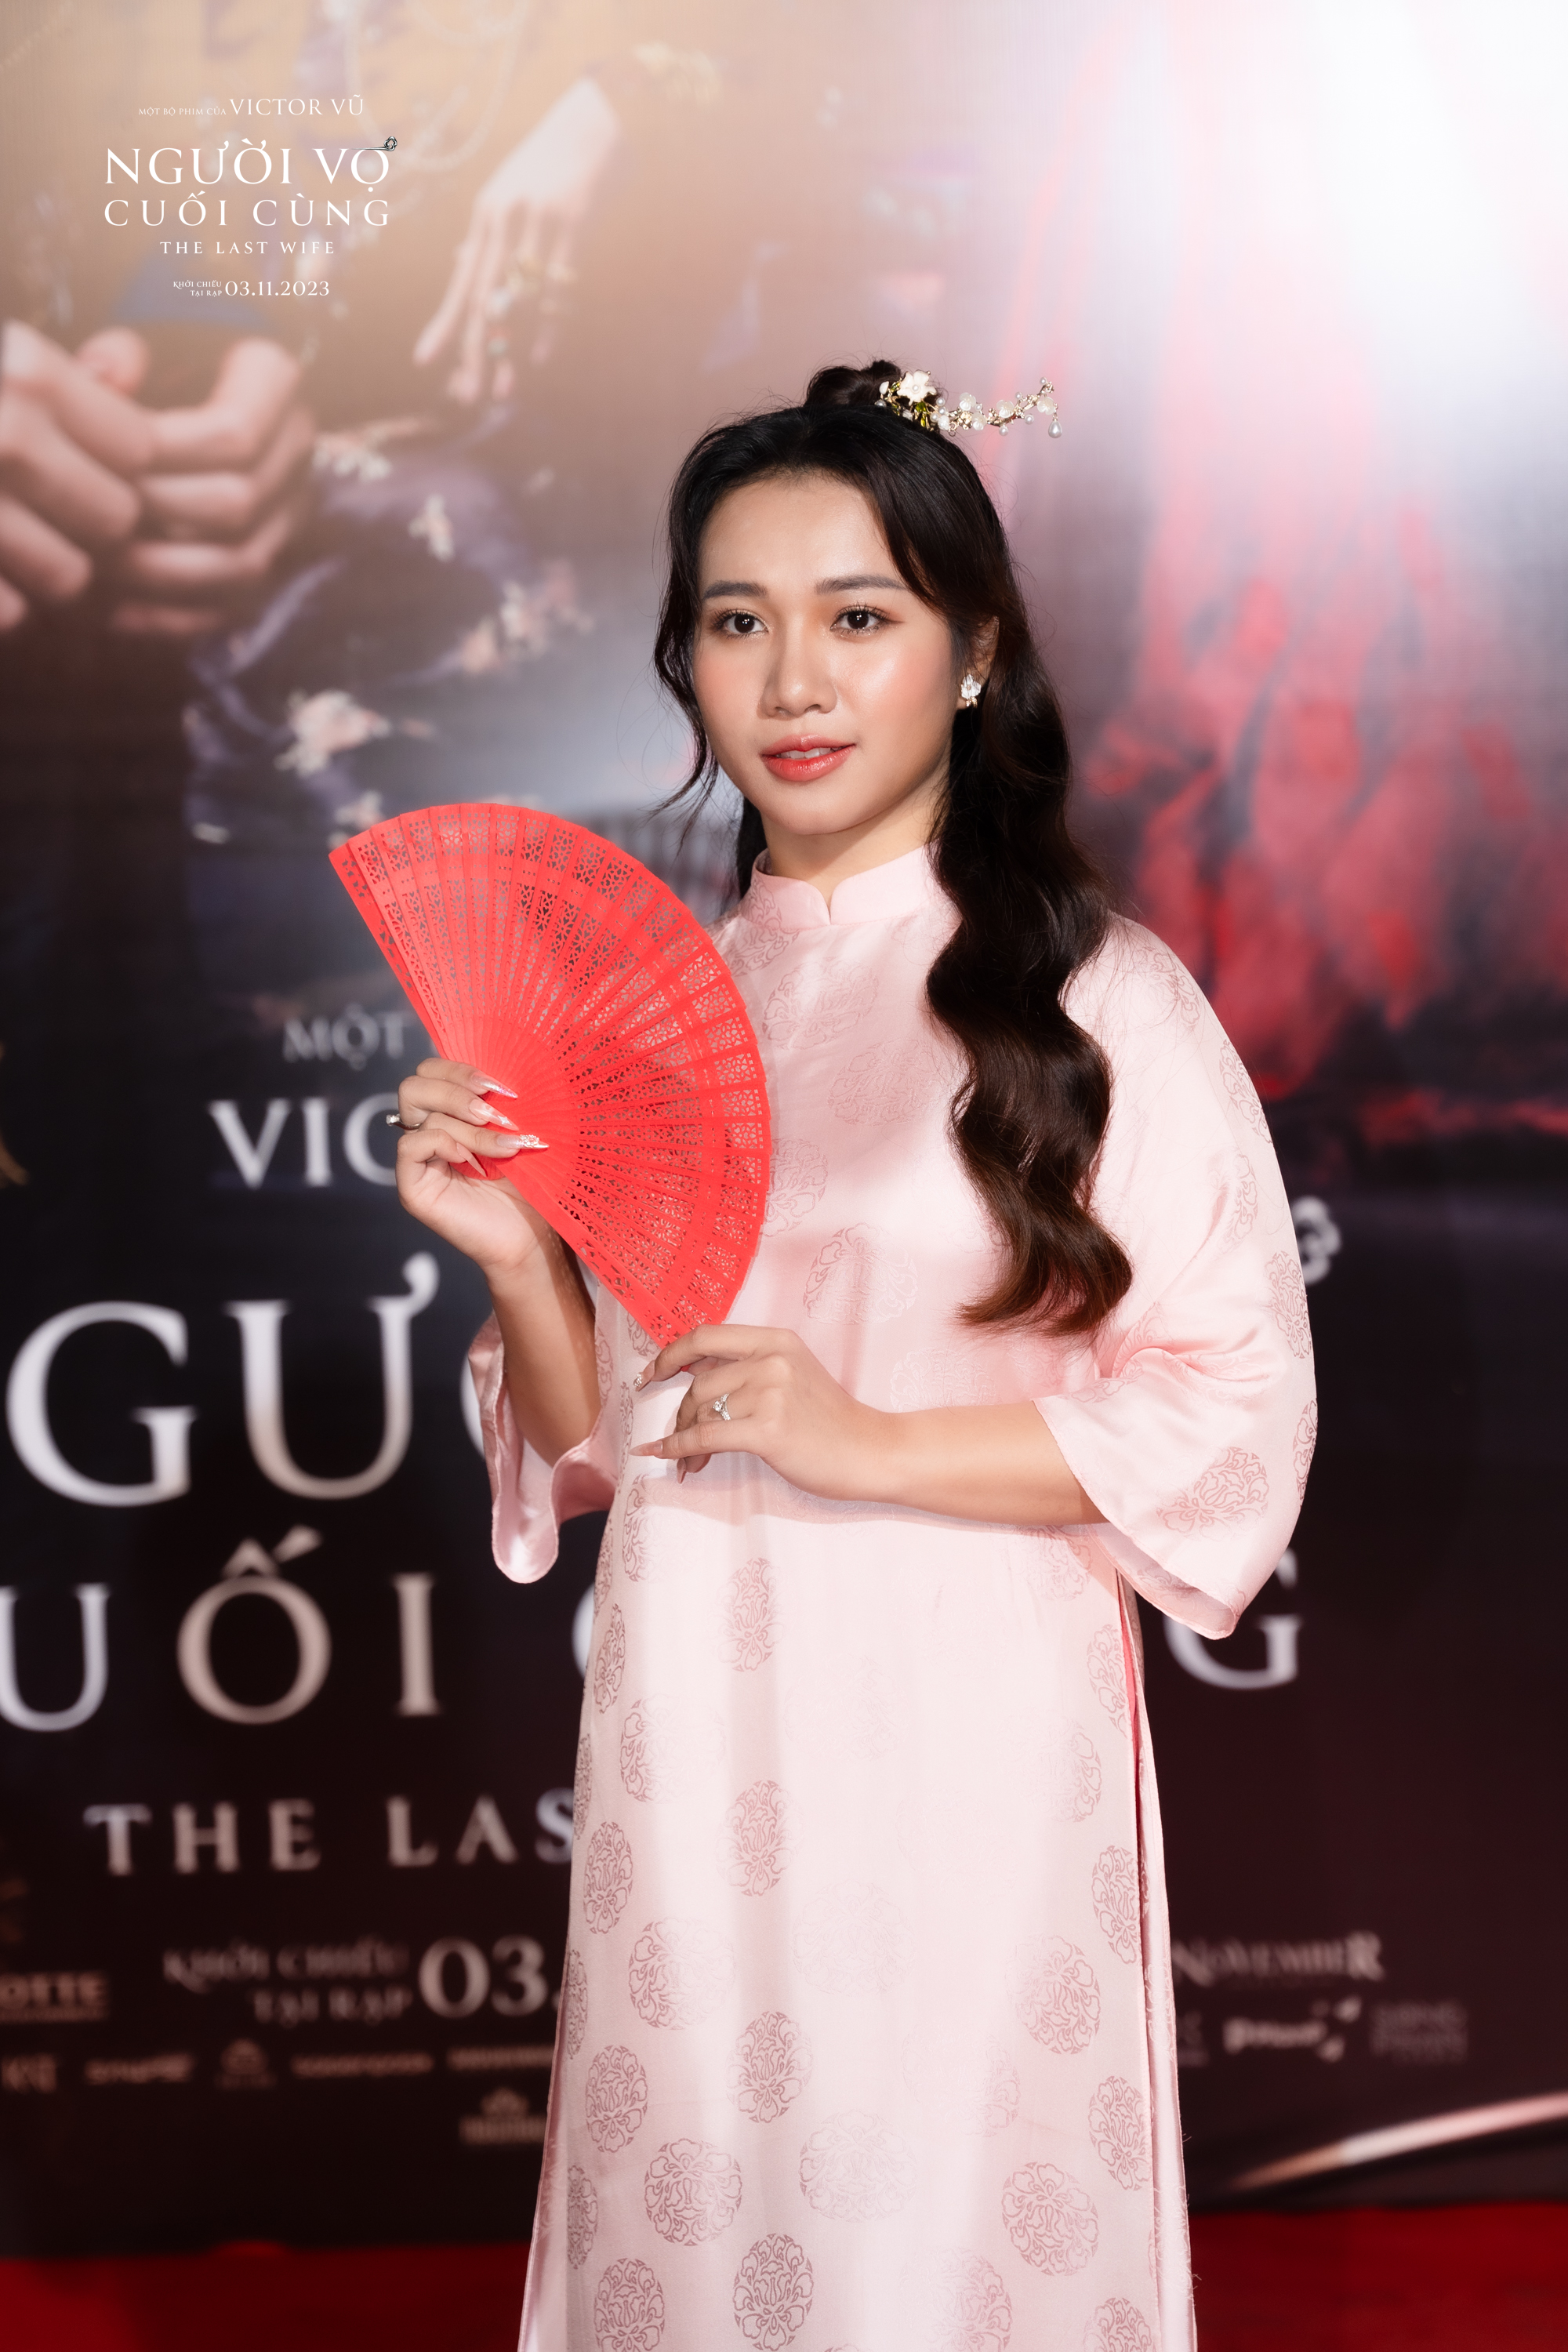 Showbiz Việt tề tựu chúc mừng phim mới của Victor Vũ - Ảnh 19.